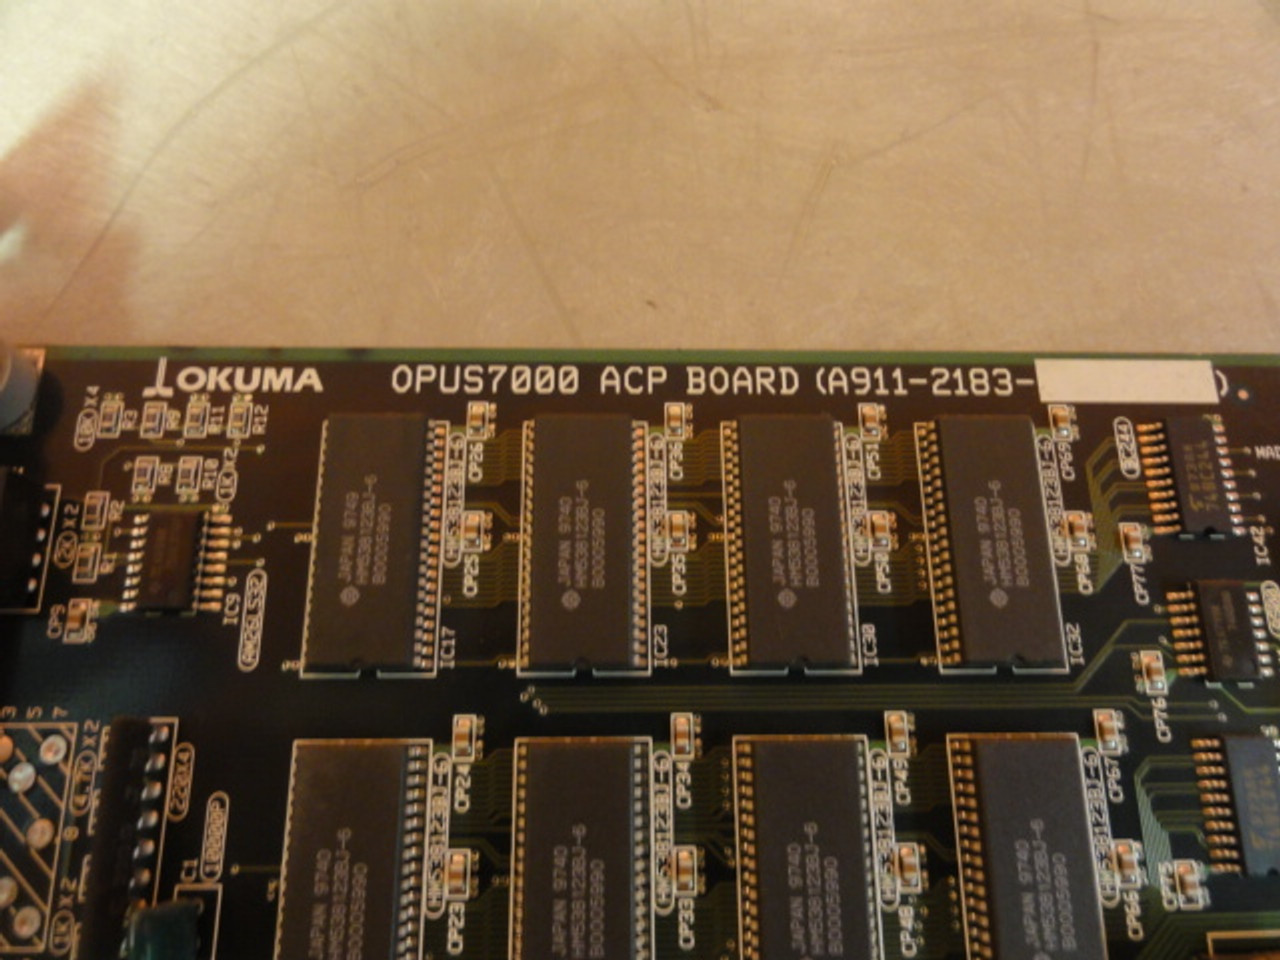 Okuma E4809-770-102 OPUS 7000 ACP Board, (A911-2183)